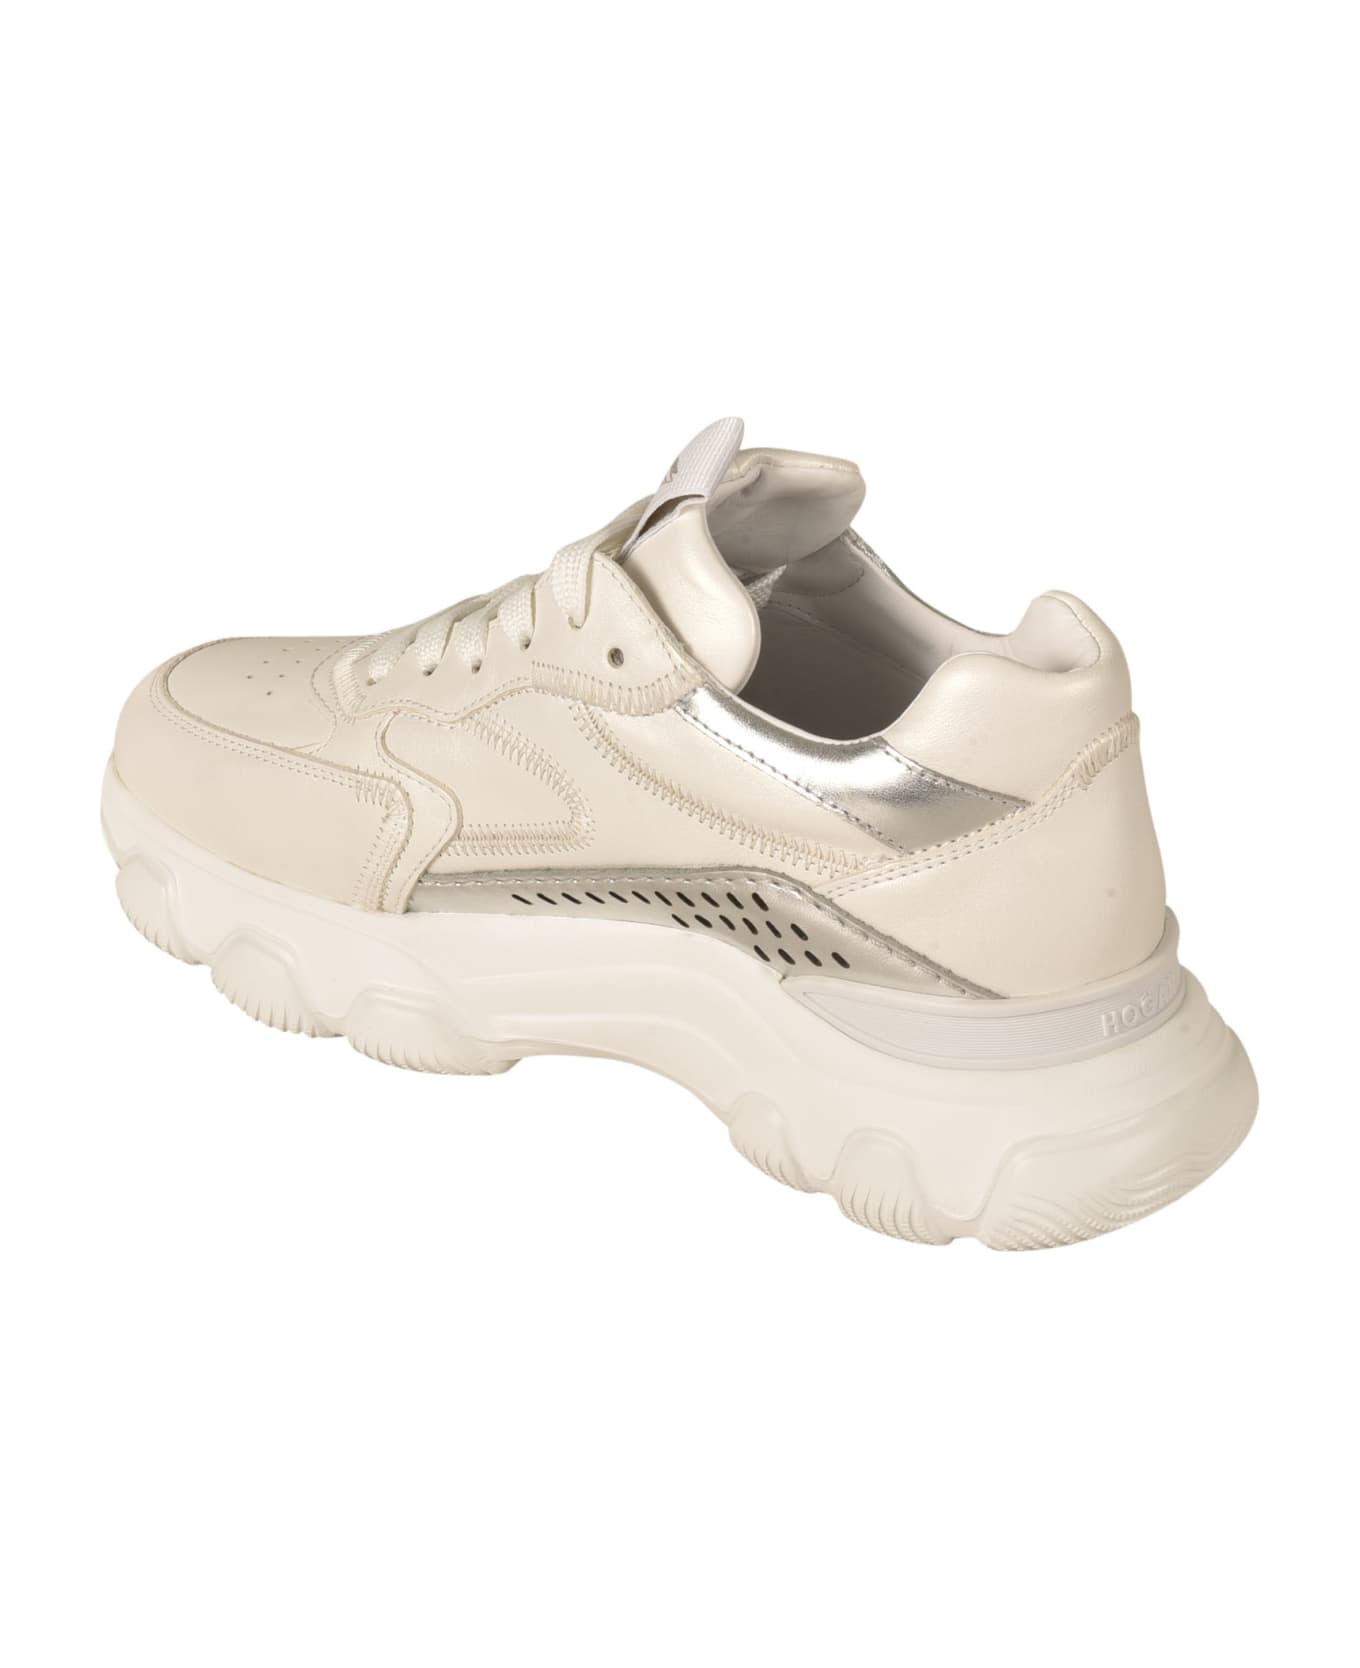 Hogan Hyperactive Sneakers - Argento Bianco